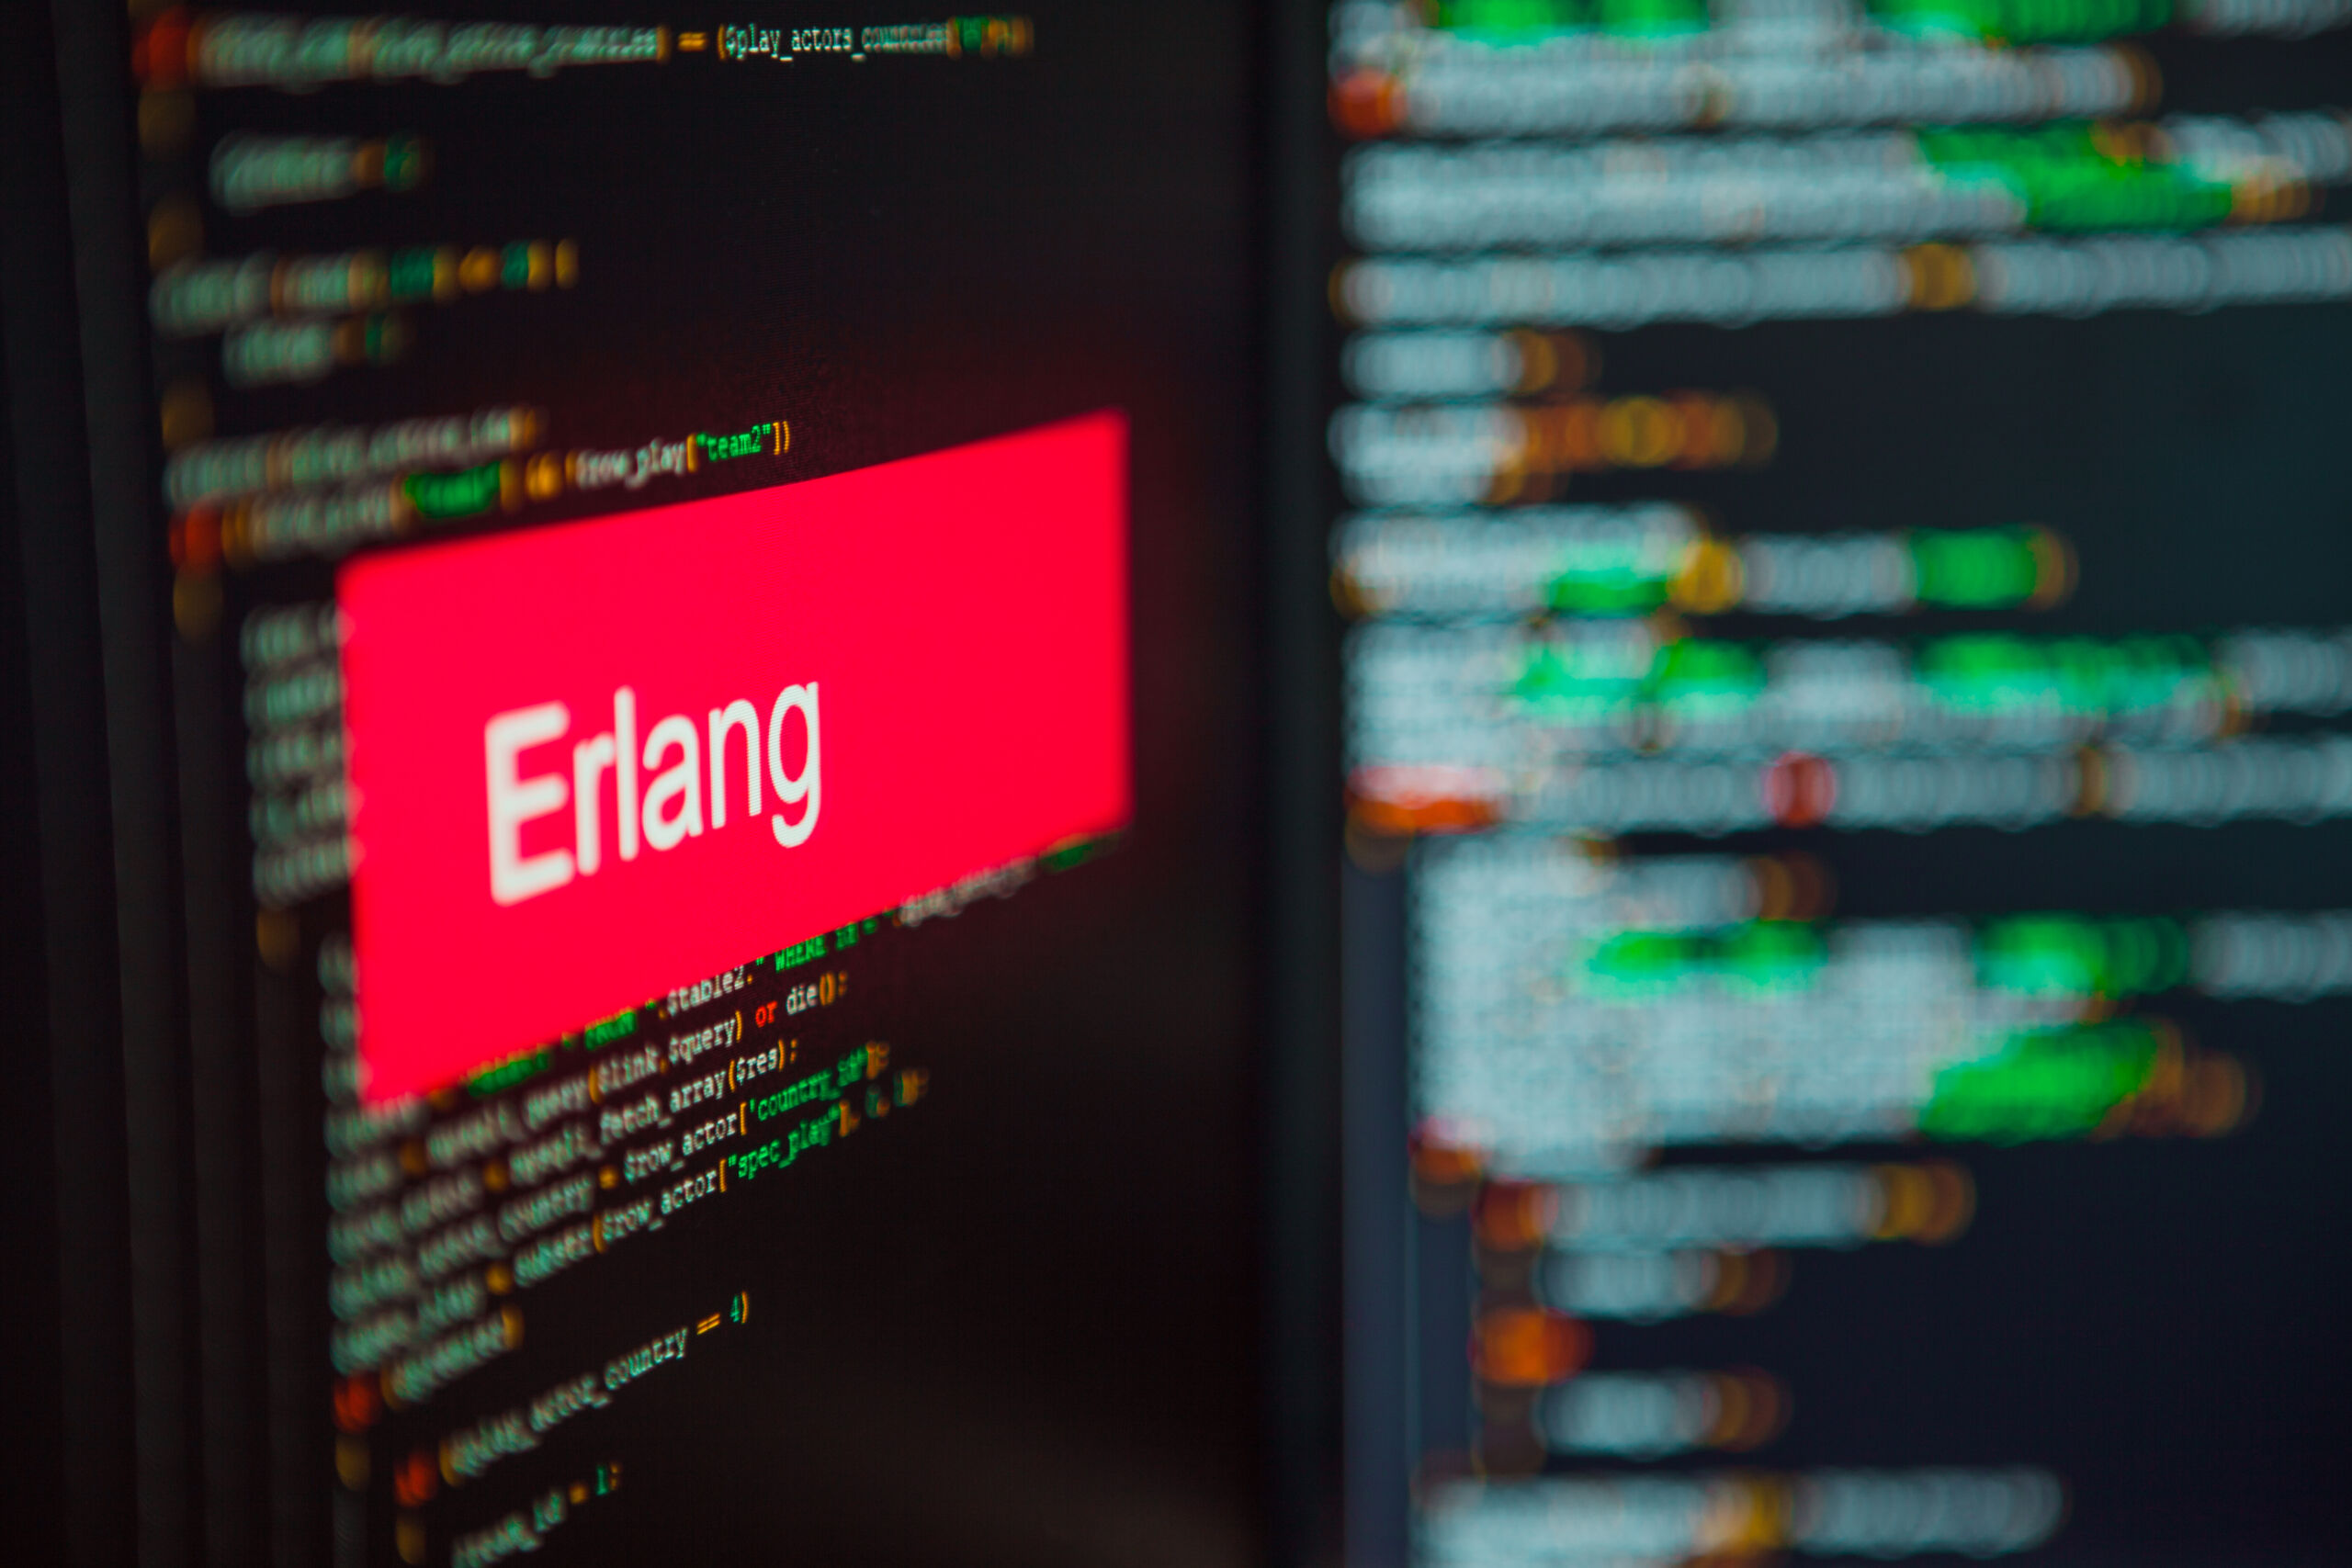 Erlang to język zdobywający popularność w telekomunikacji